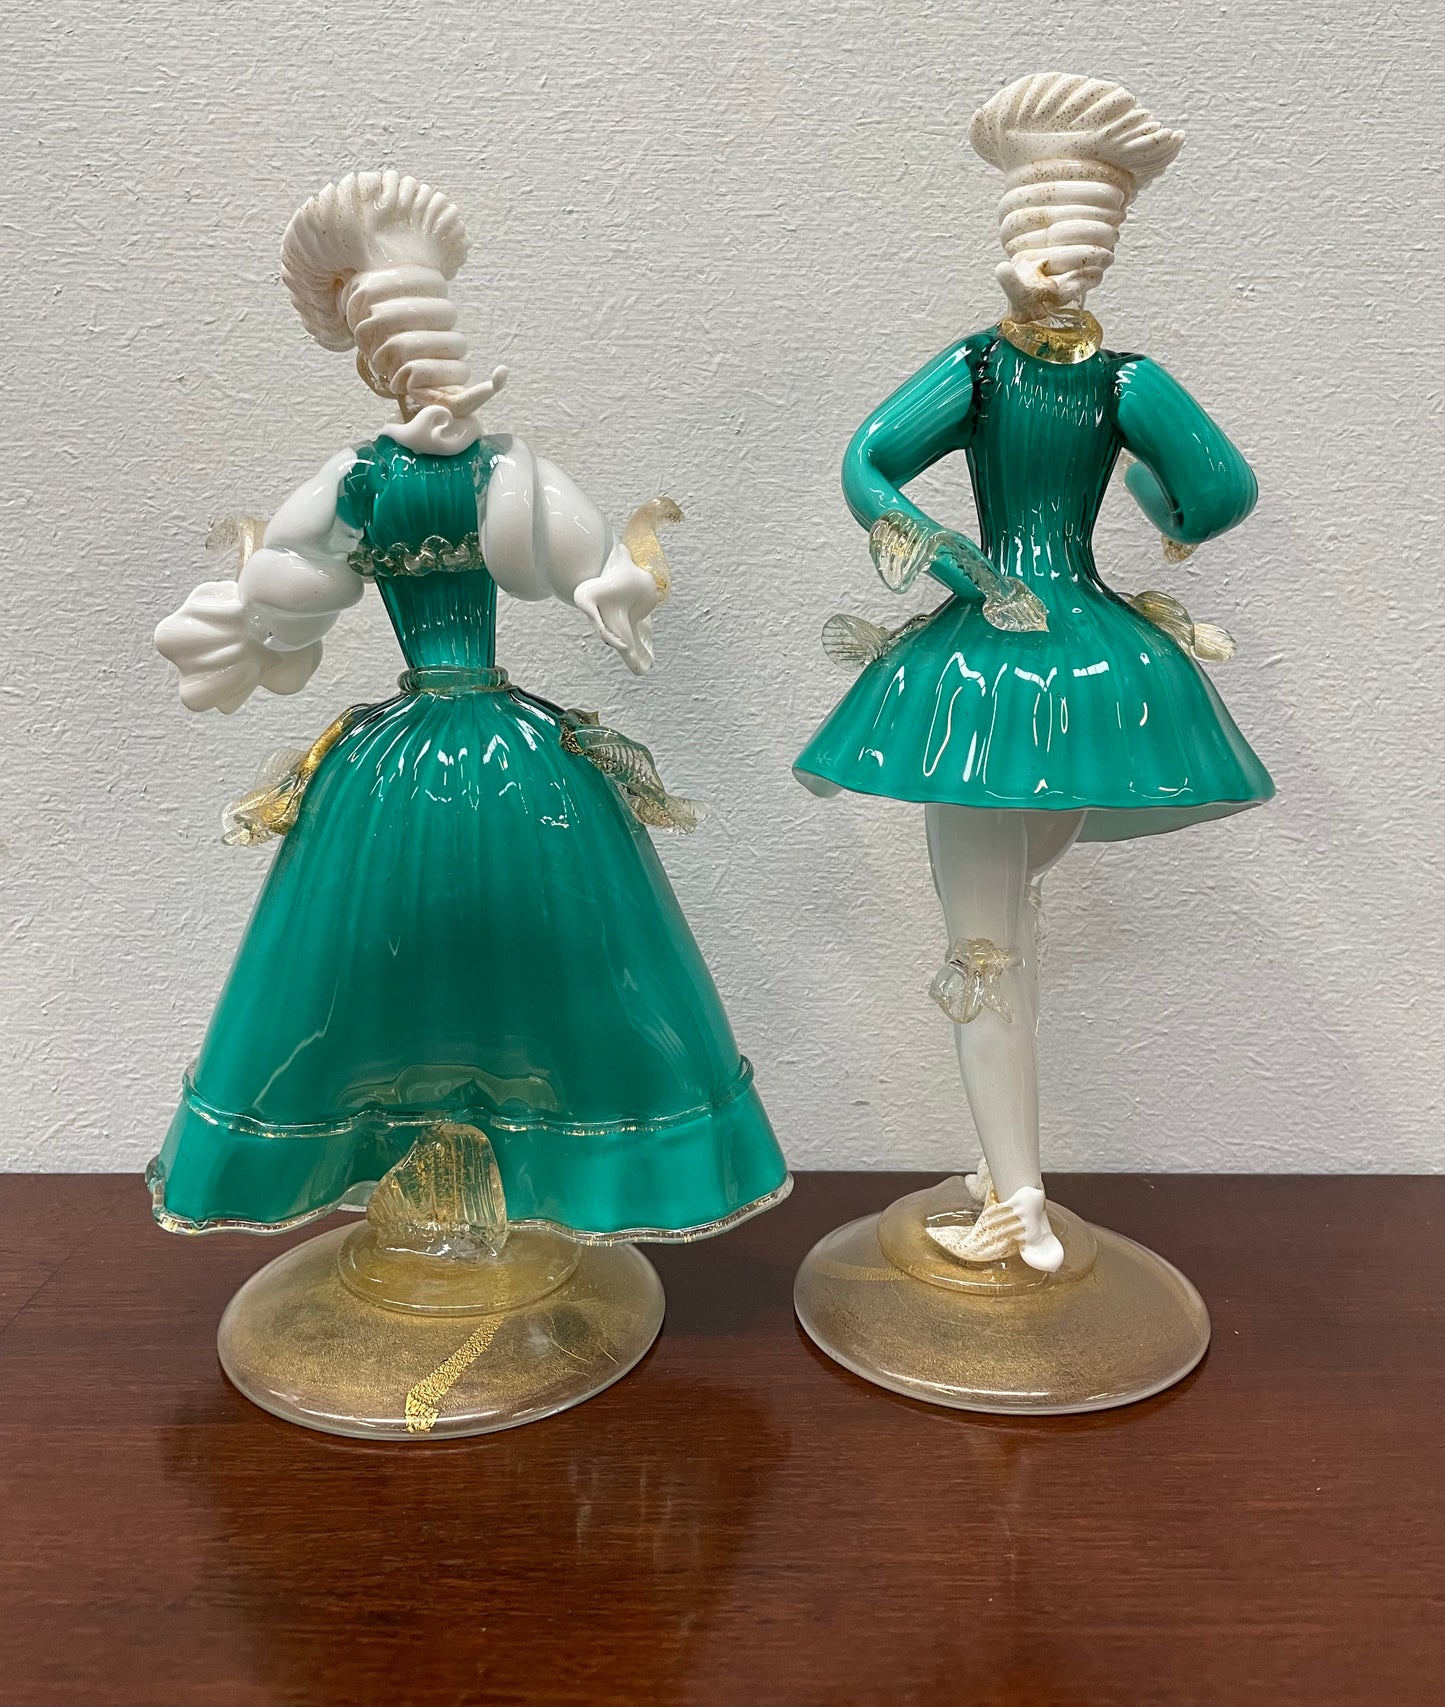 Stunning Pair of Murano Glass Figurines